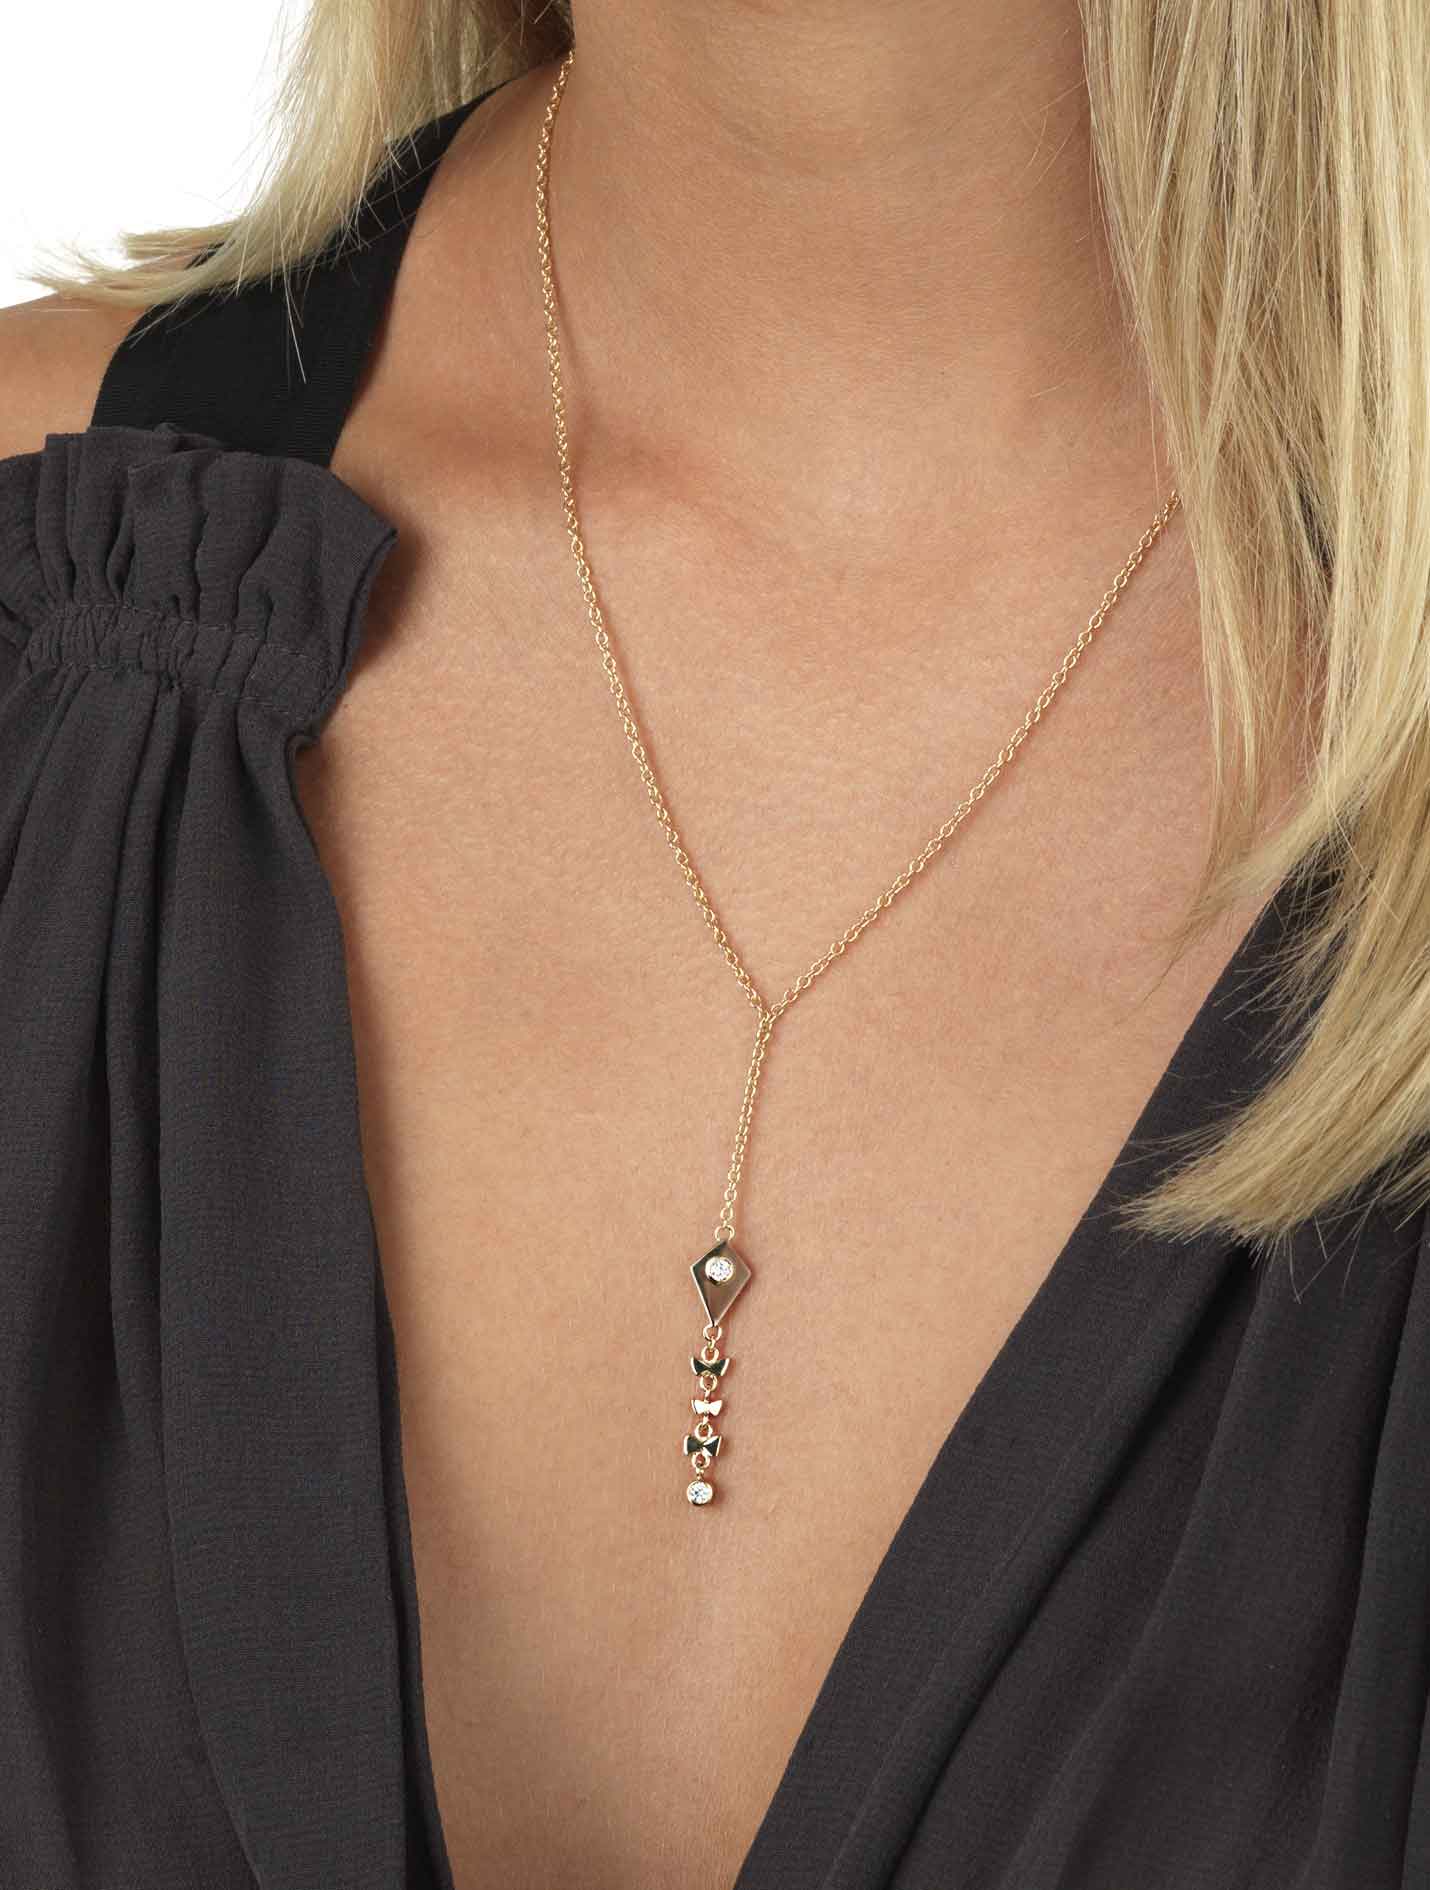 Kite - Necklace with diamonds